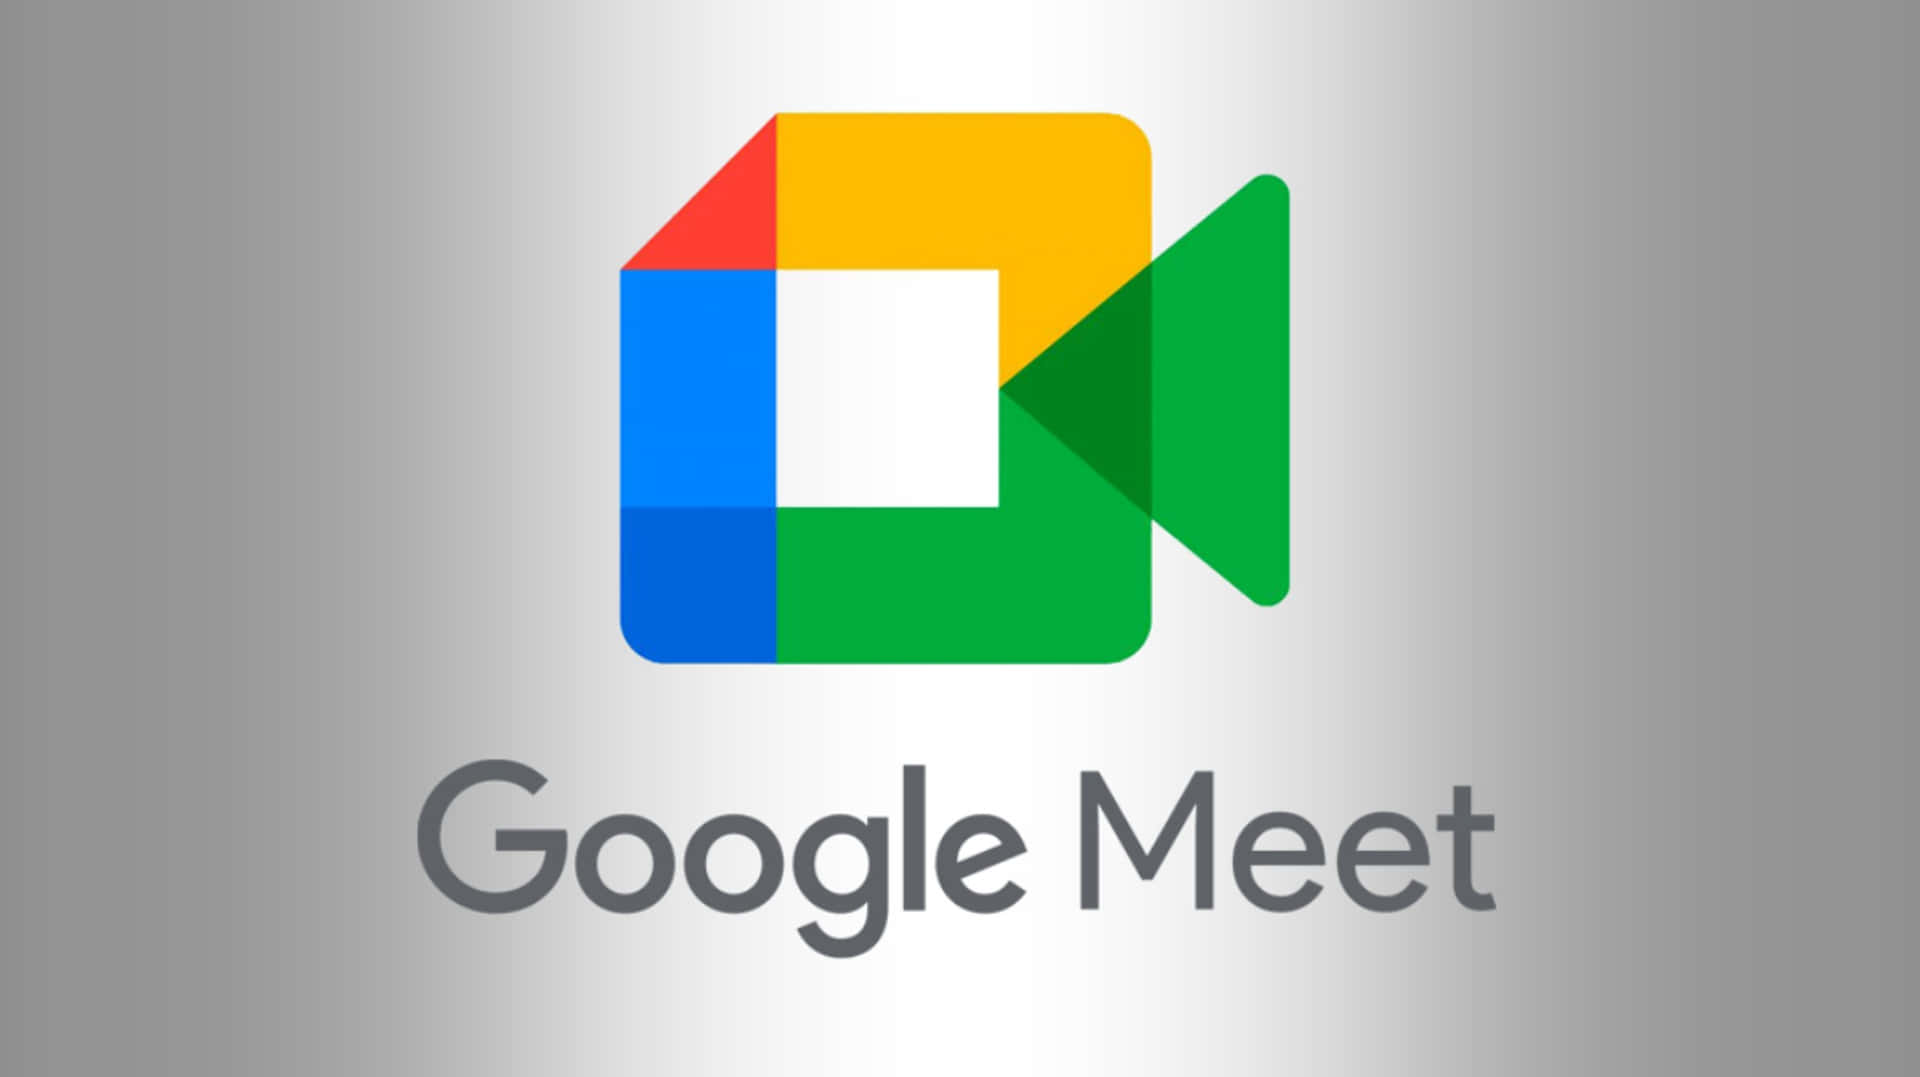 Google Meet In Action